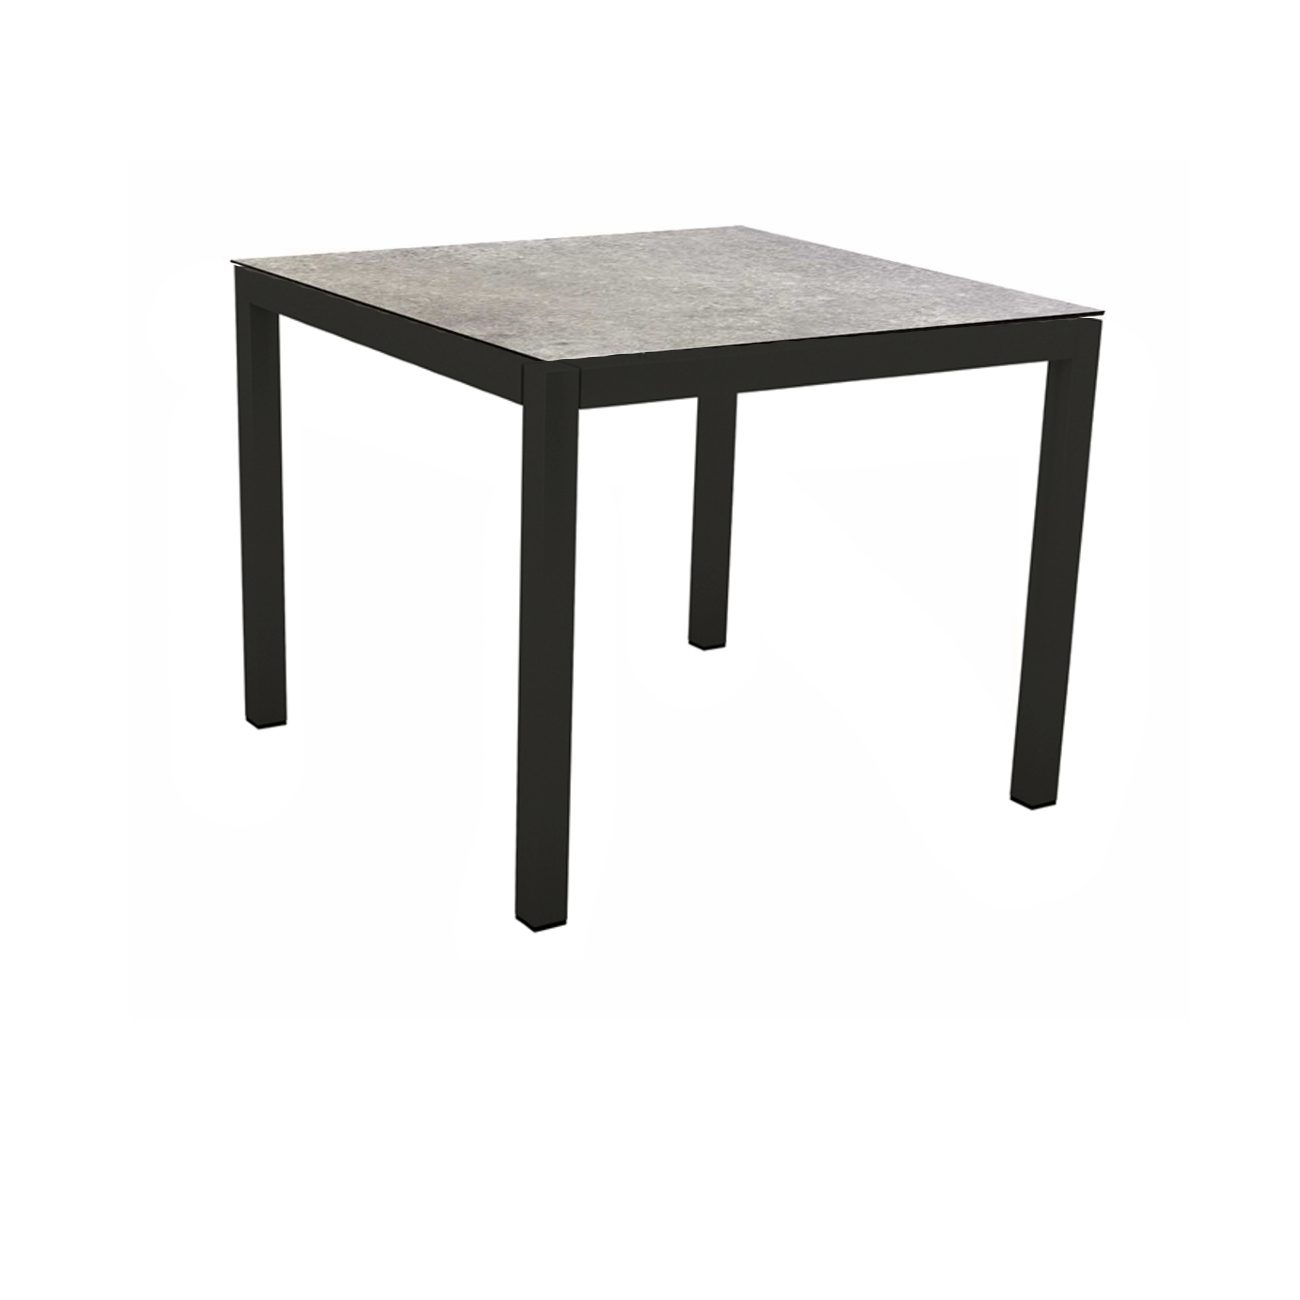 Stern Gartentisch, Gestell Aluminium schwarz matt, Tischplatte HPL Vintage Stone, 90x90 cm